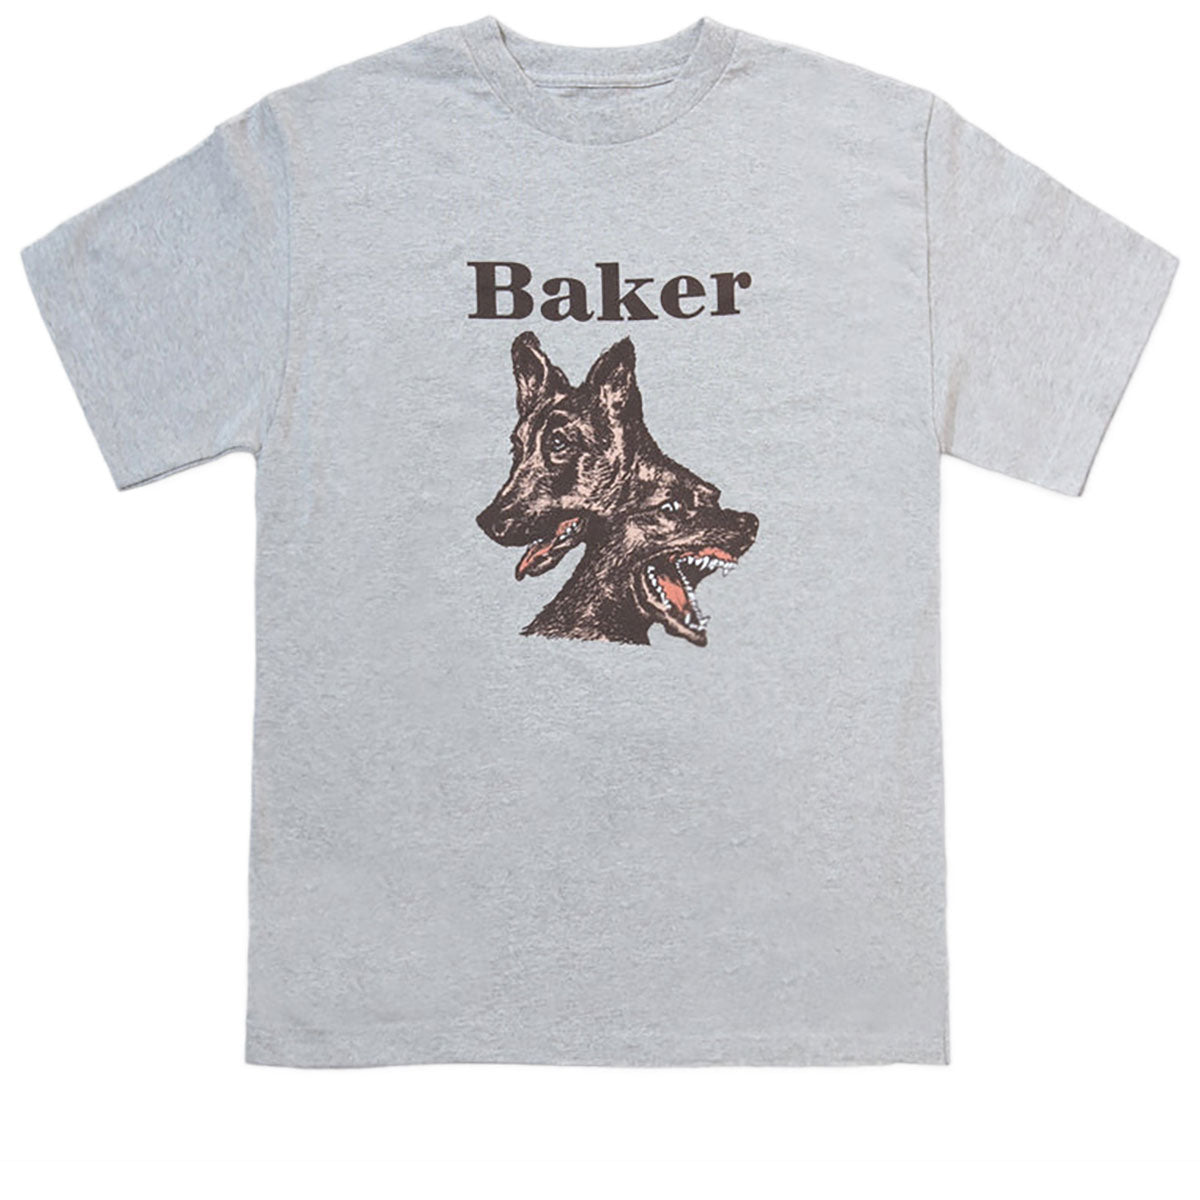 Baker Double Dog T-Shirt - Athletic Heather image 1